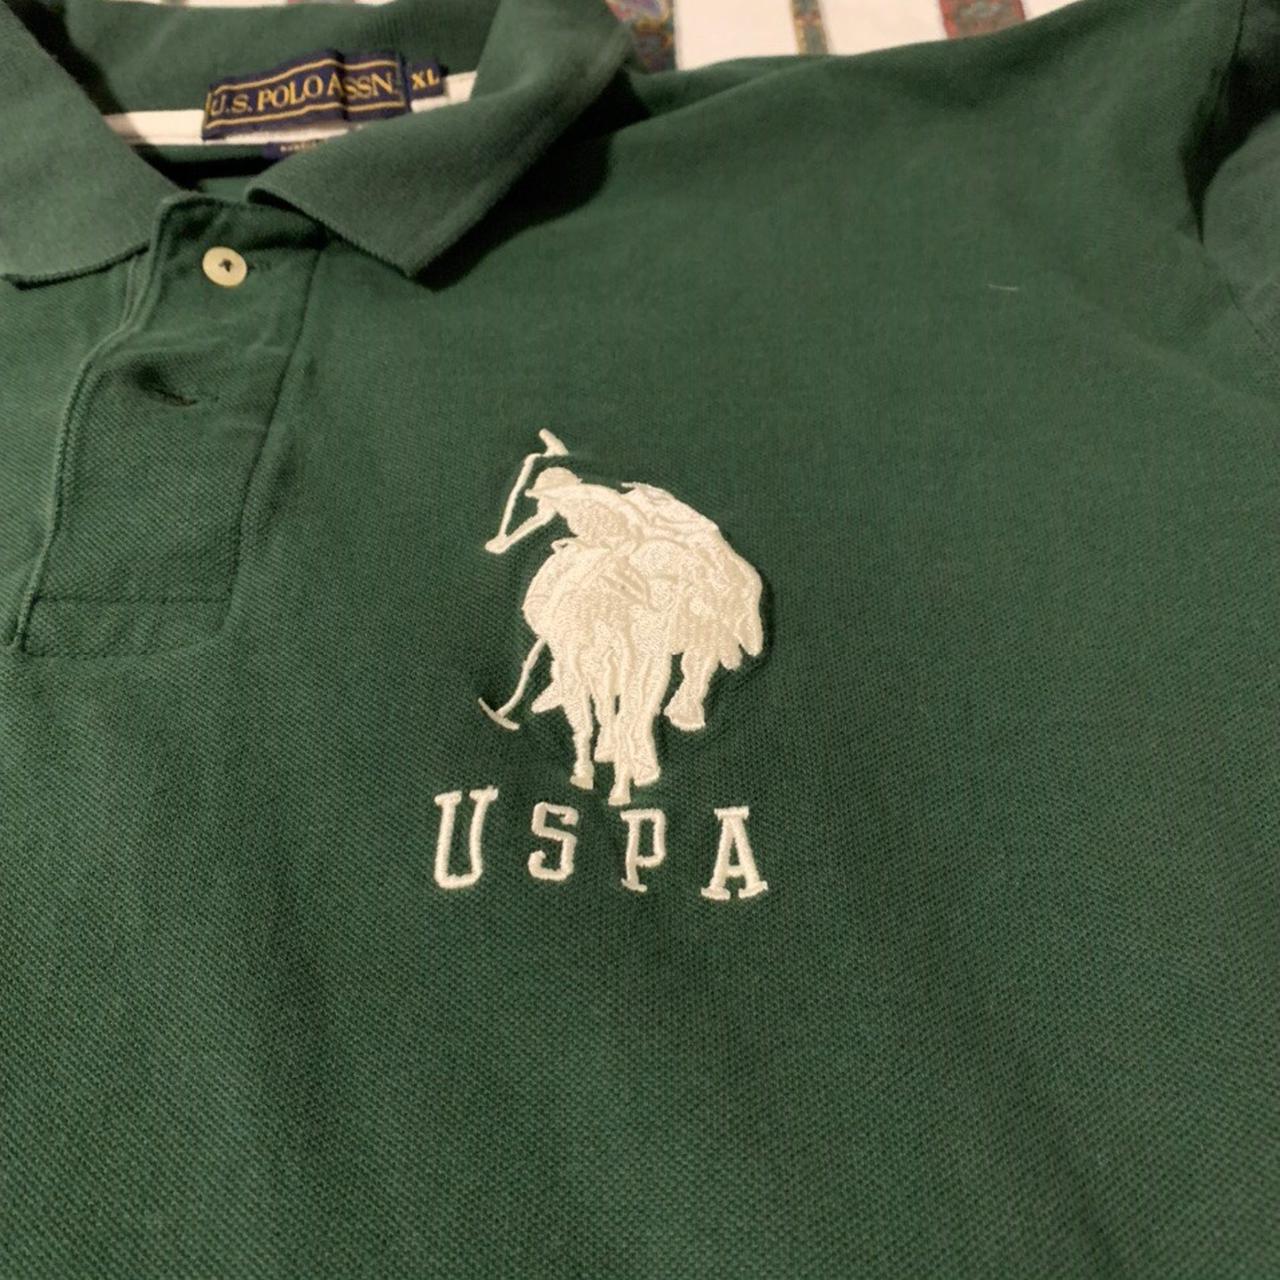 U.S. Polo Assn. Men's Polo-shirts (2)